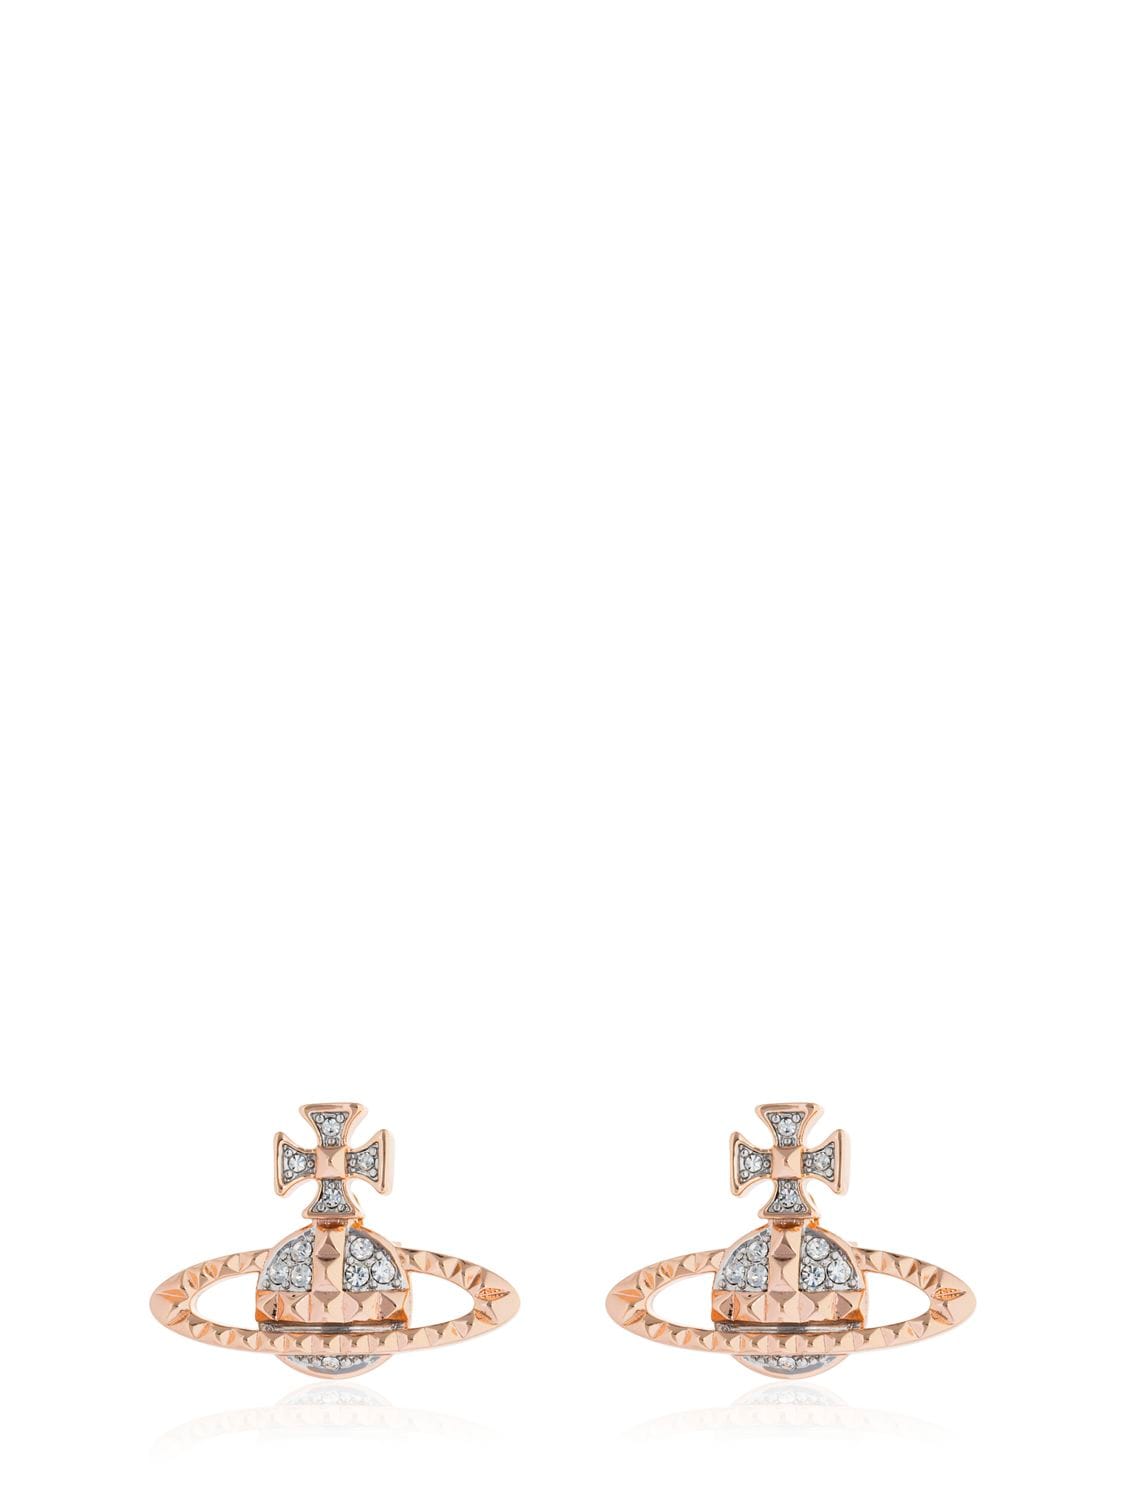 Shop Vivienne Westwood Mayfair Bas Relief Stud Earrings In Rose Gold